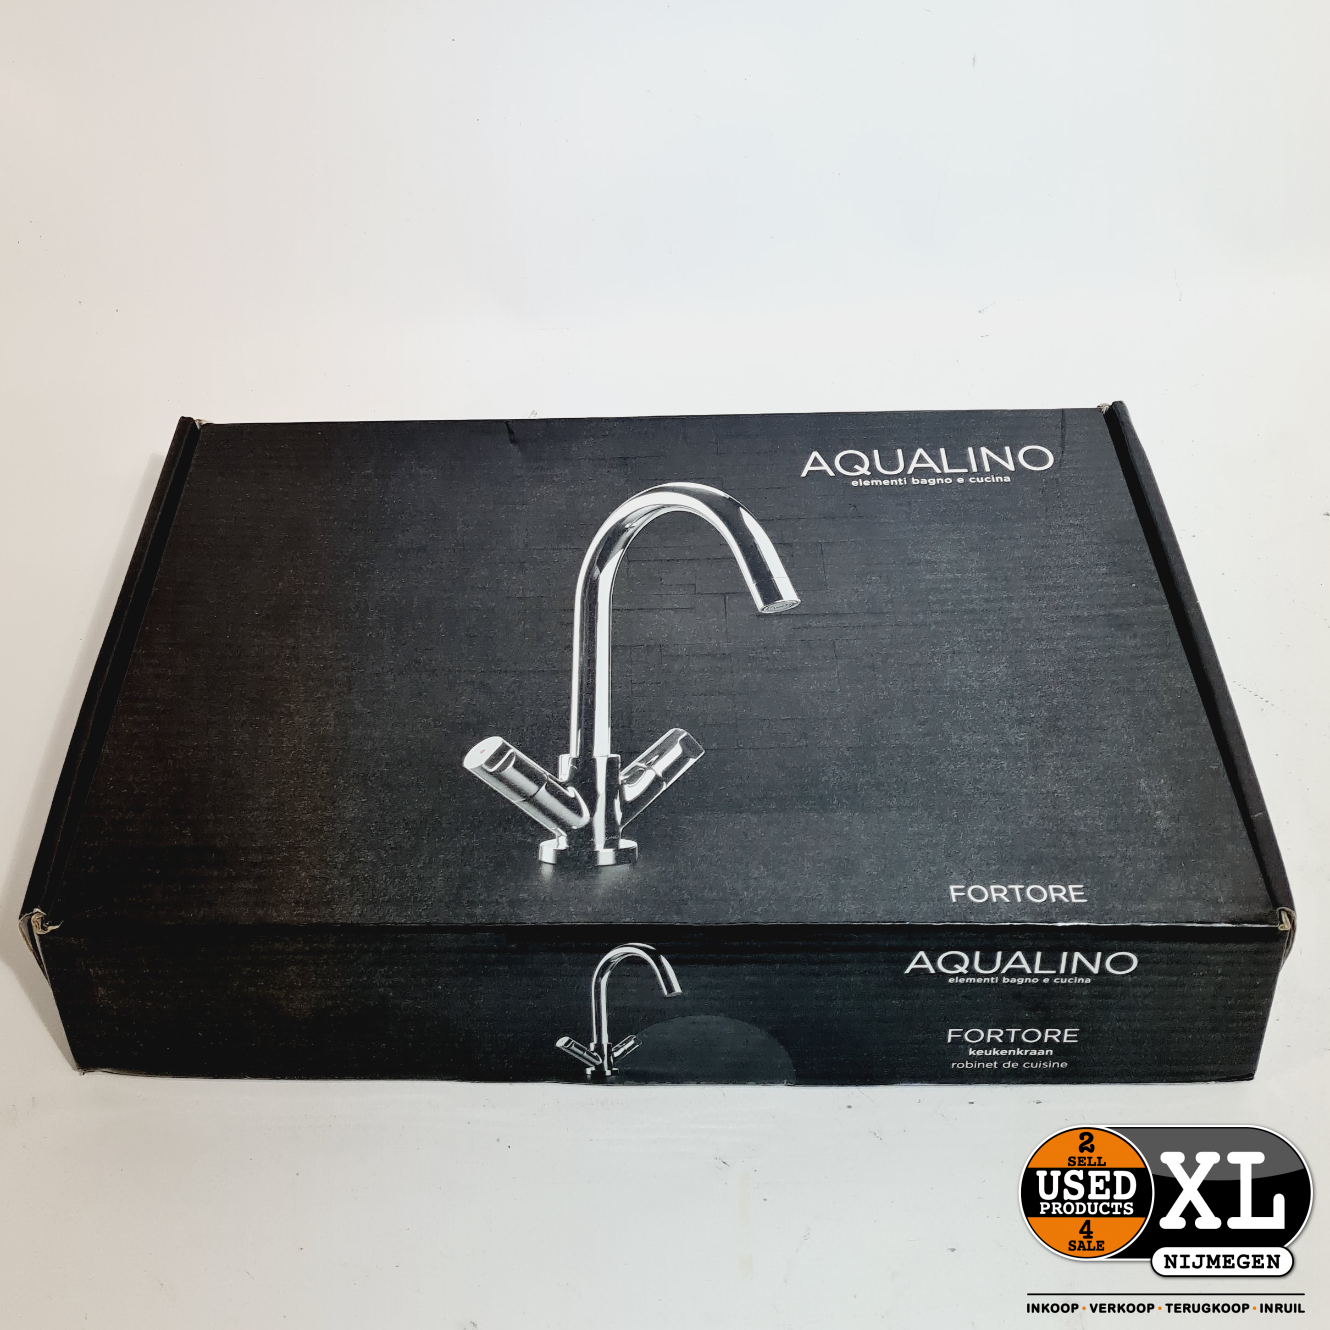 Aqualino Chroom ZGAN - Used Products Nijmegen XL